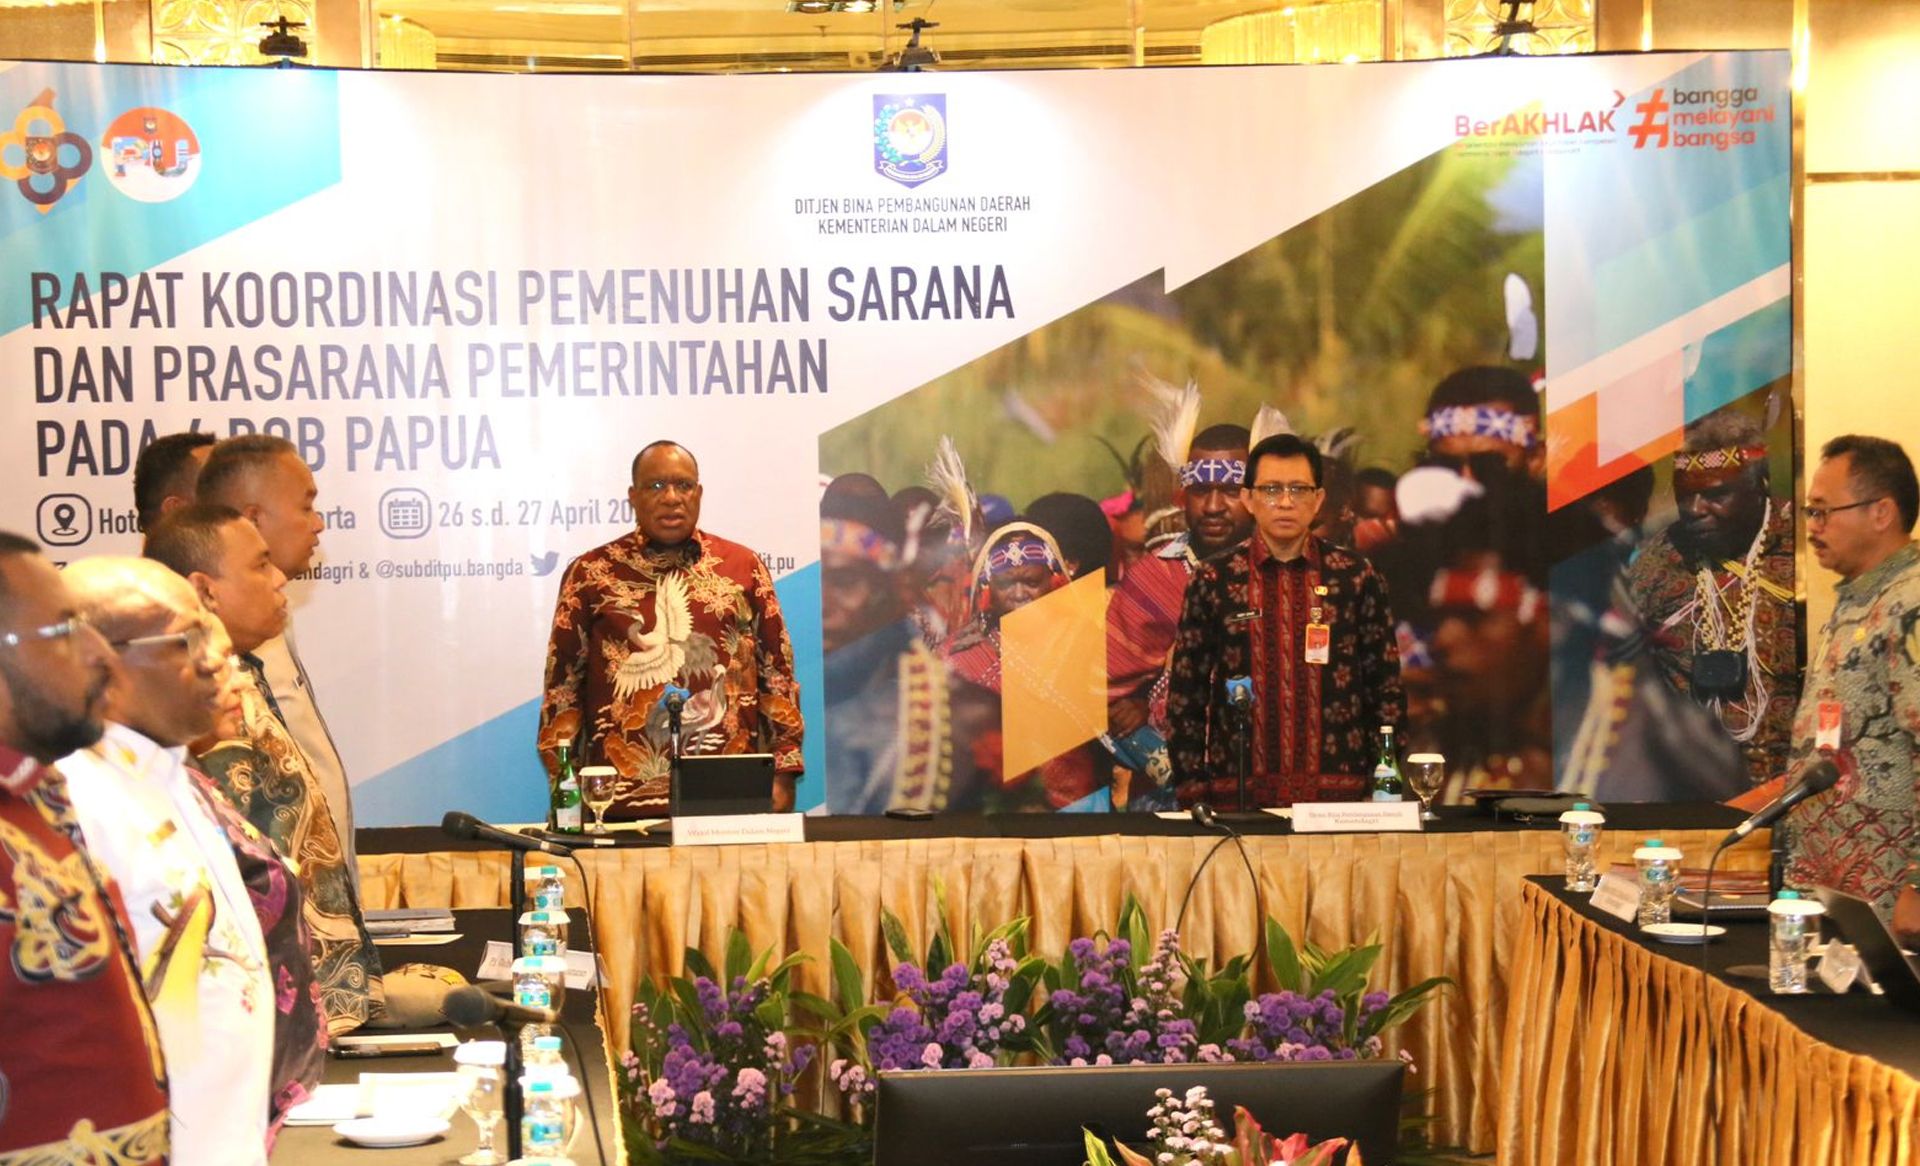 Rapat Koordinasi Pemenuhan Sarana dan Prasarana Pemerintahan pada 4 DOB Papua di Hotel Ambhara, Jakarta, Jumat 26 April 2024